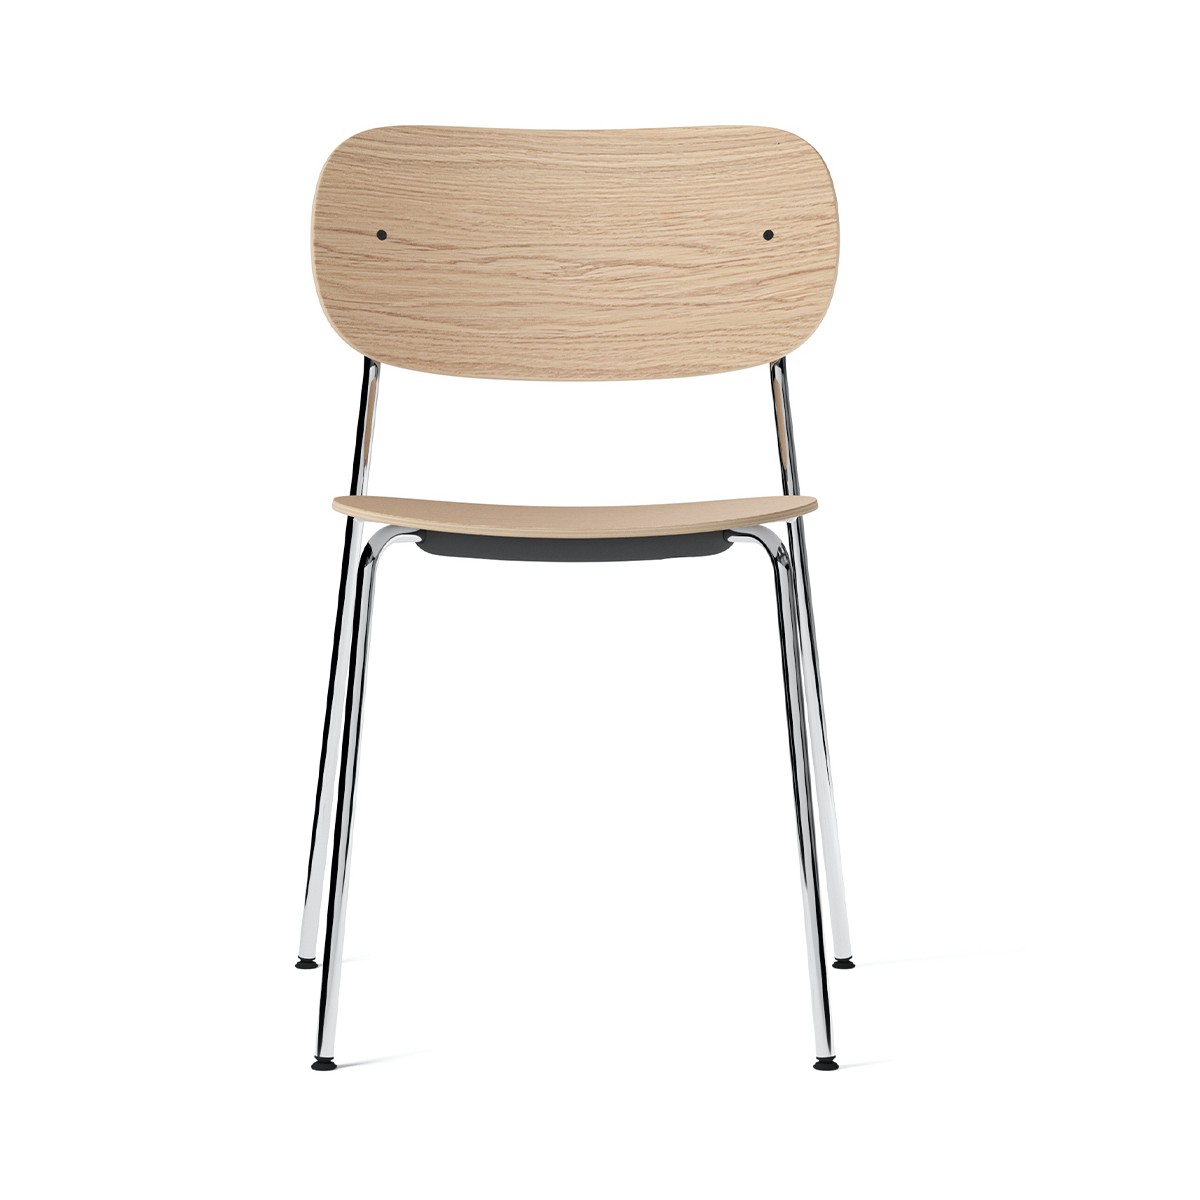 sans accoudoirs - natural oak / chrome frame - Co chair